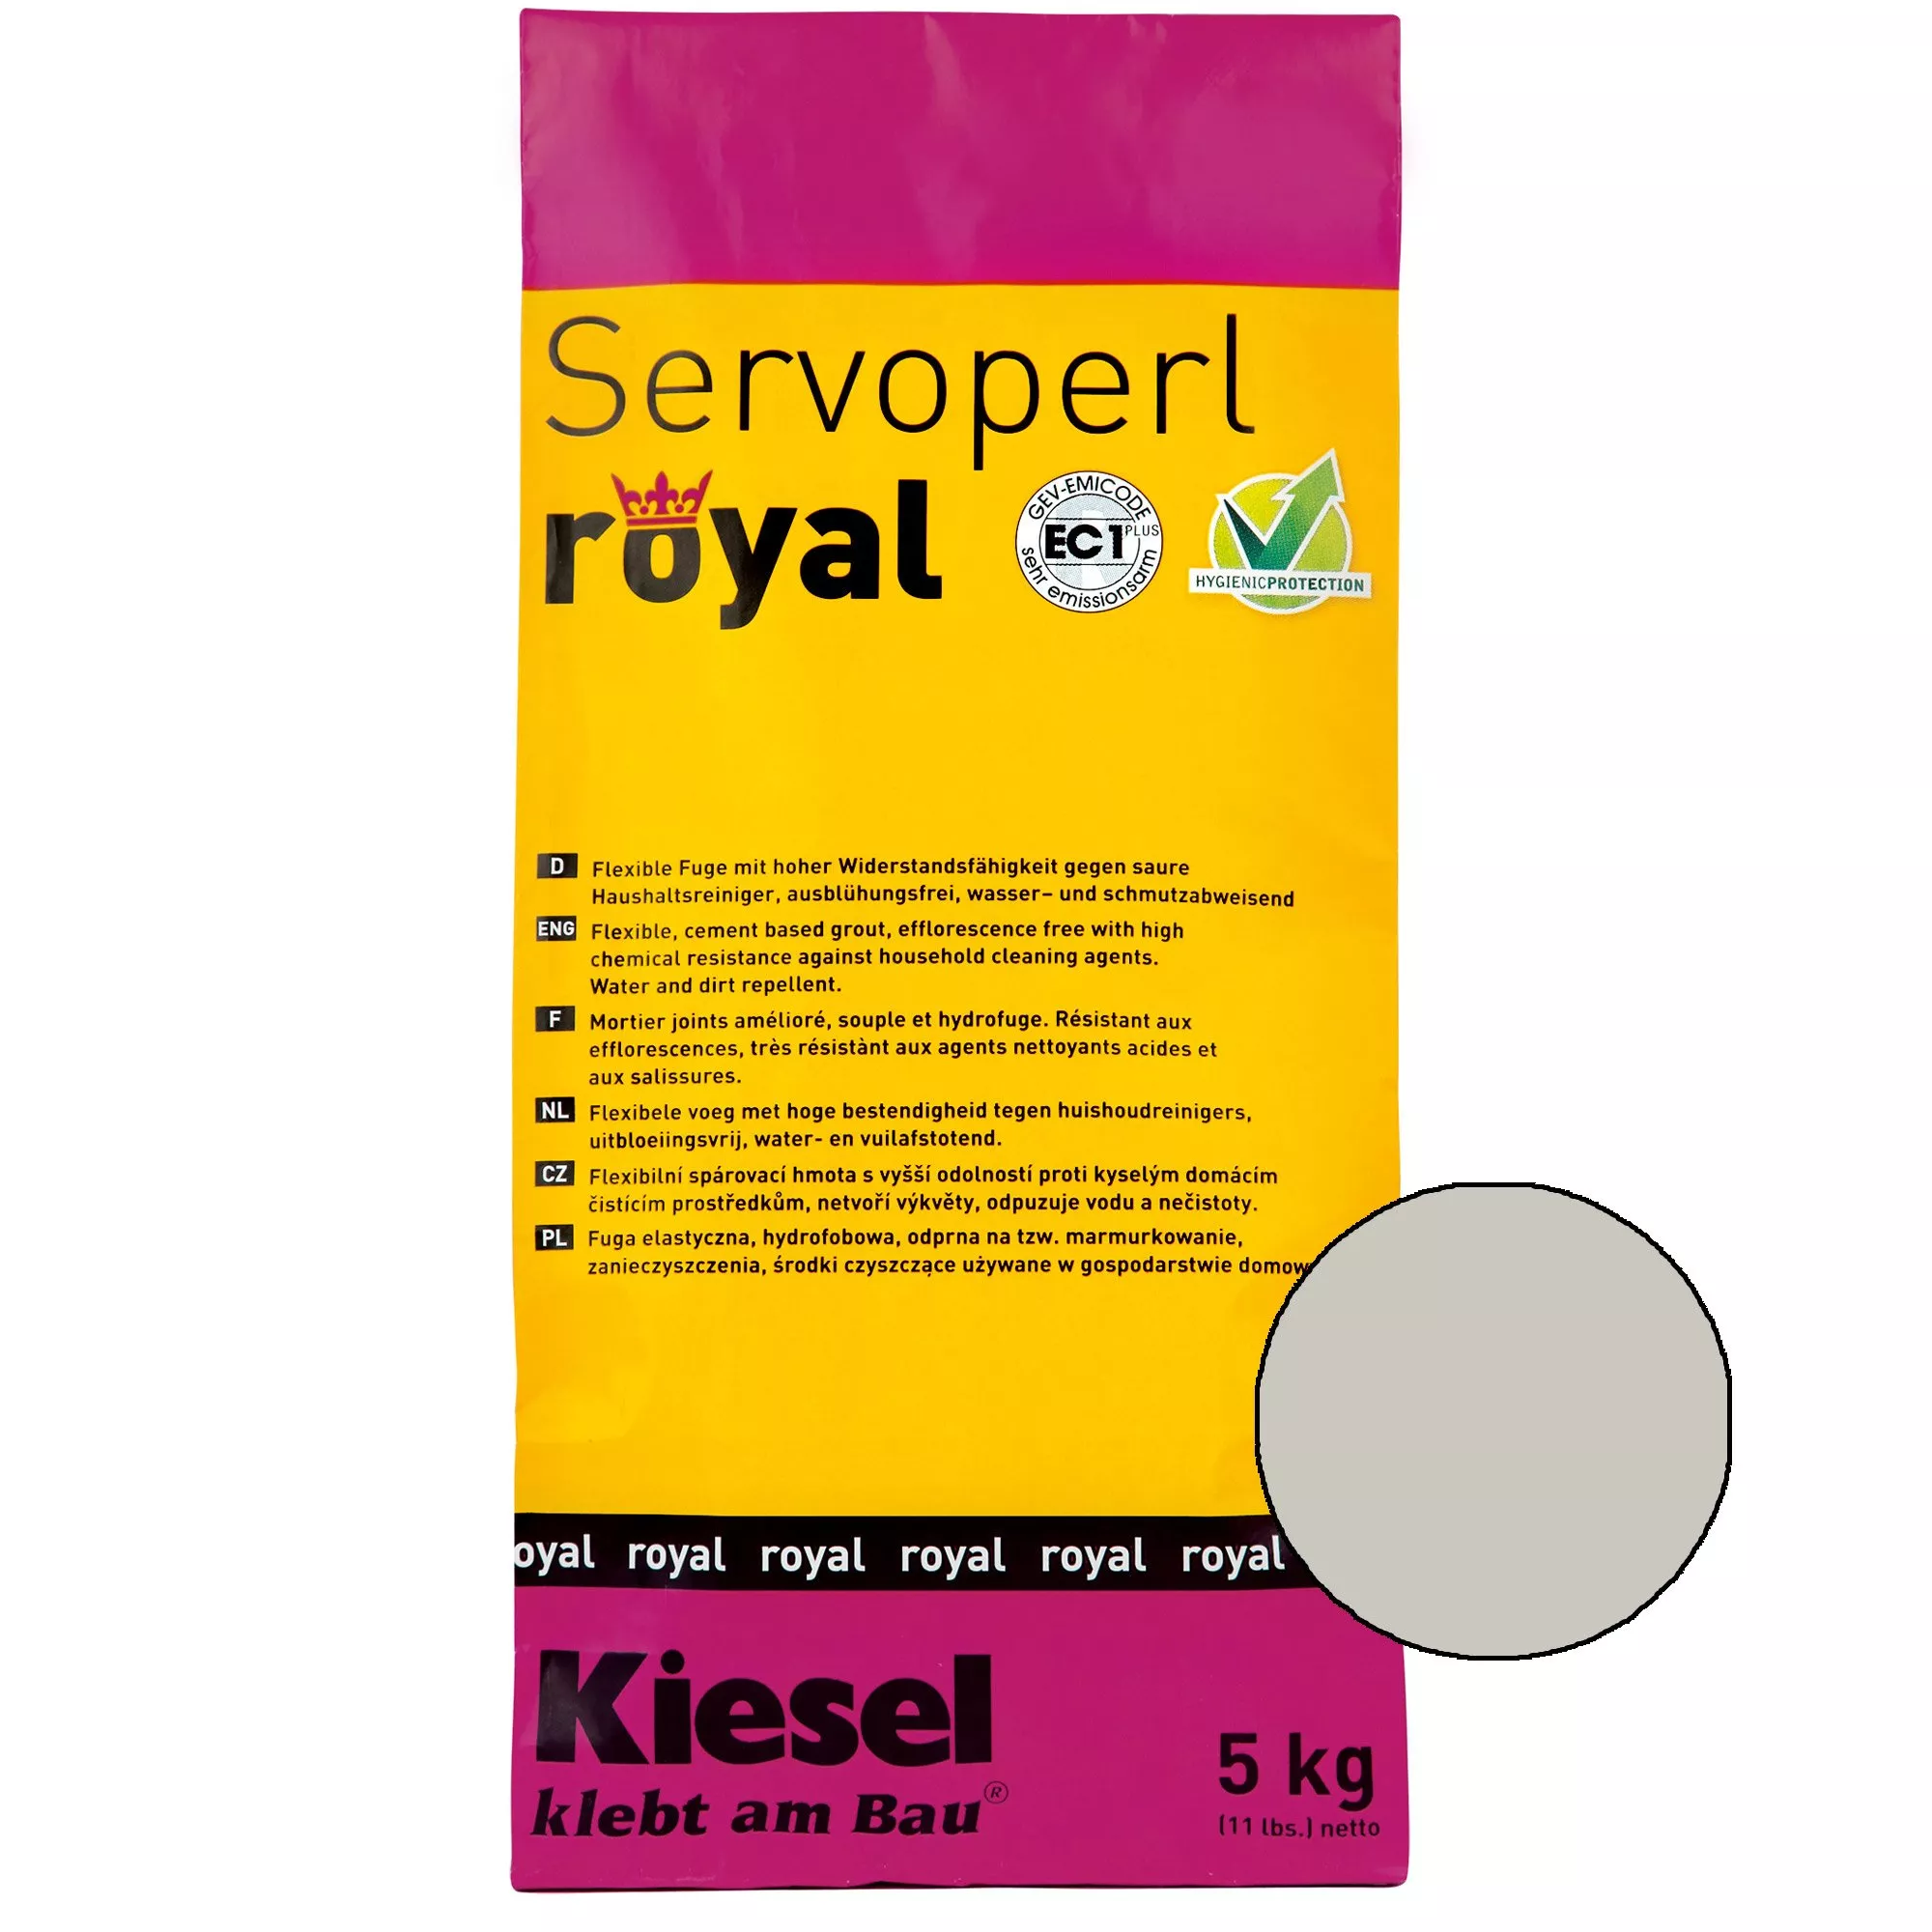 Kiesel Servoperl Royal - Elastyczna, Odporna Na Wodę I Brud Spoina (5KG Srebrnoszara)